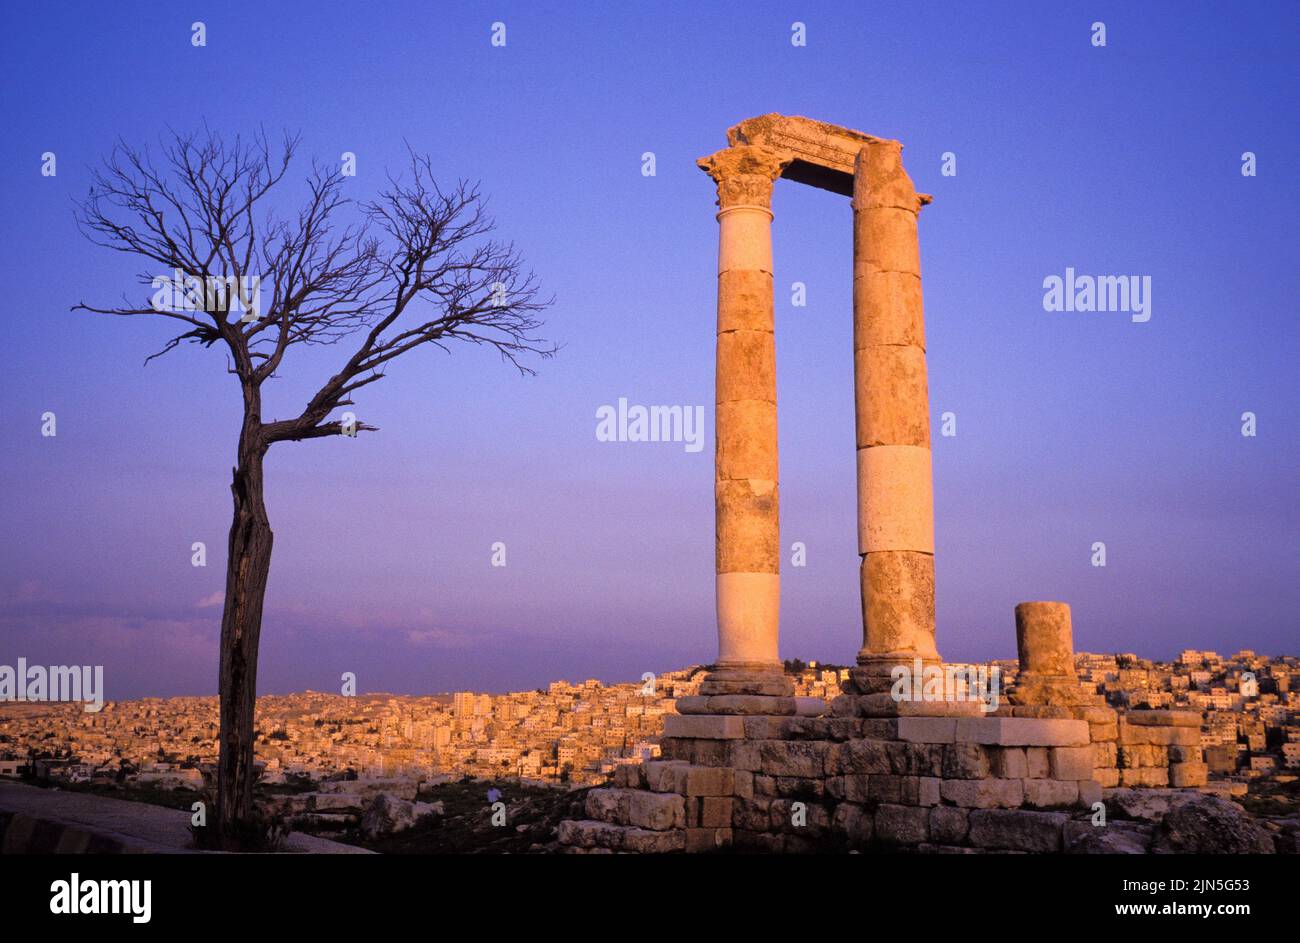 Jordan, Amman, Jabal Al Qalaa, Temple of Hercules Stock Photo